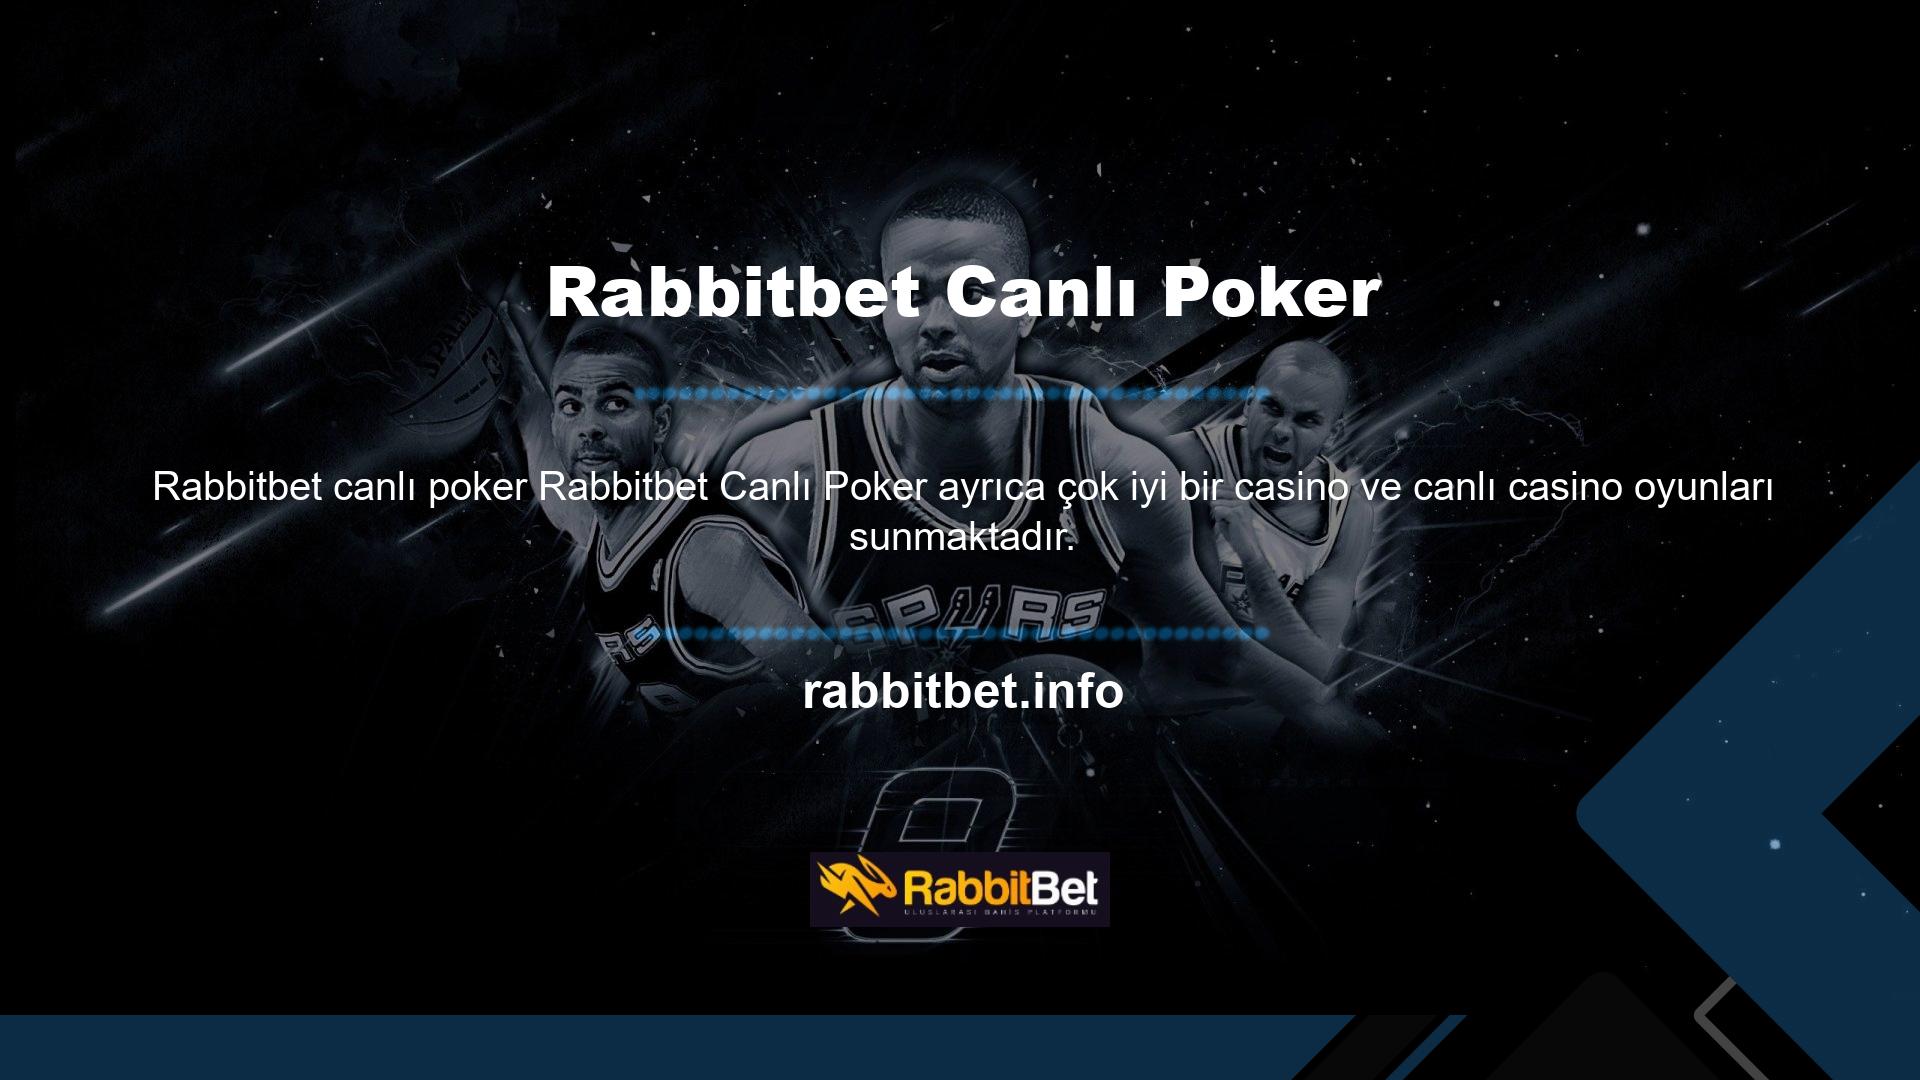 Türk şirketi Rabbitbet, Poker, Canlı Bingo, Avea, Hilo, Zeppelin ve daha fazlası gibi her türden yeni ve popüler slot oyunlarını paylaşıyor